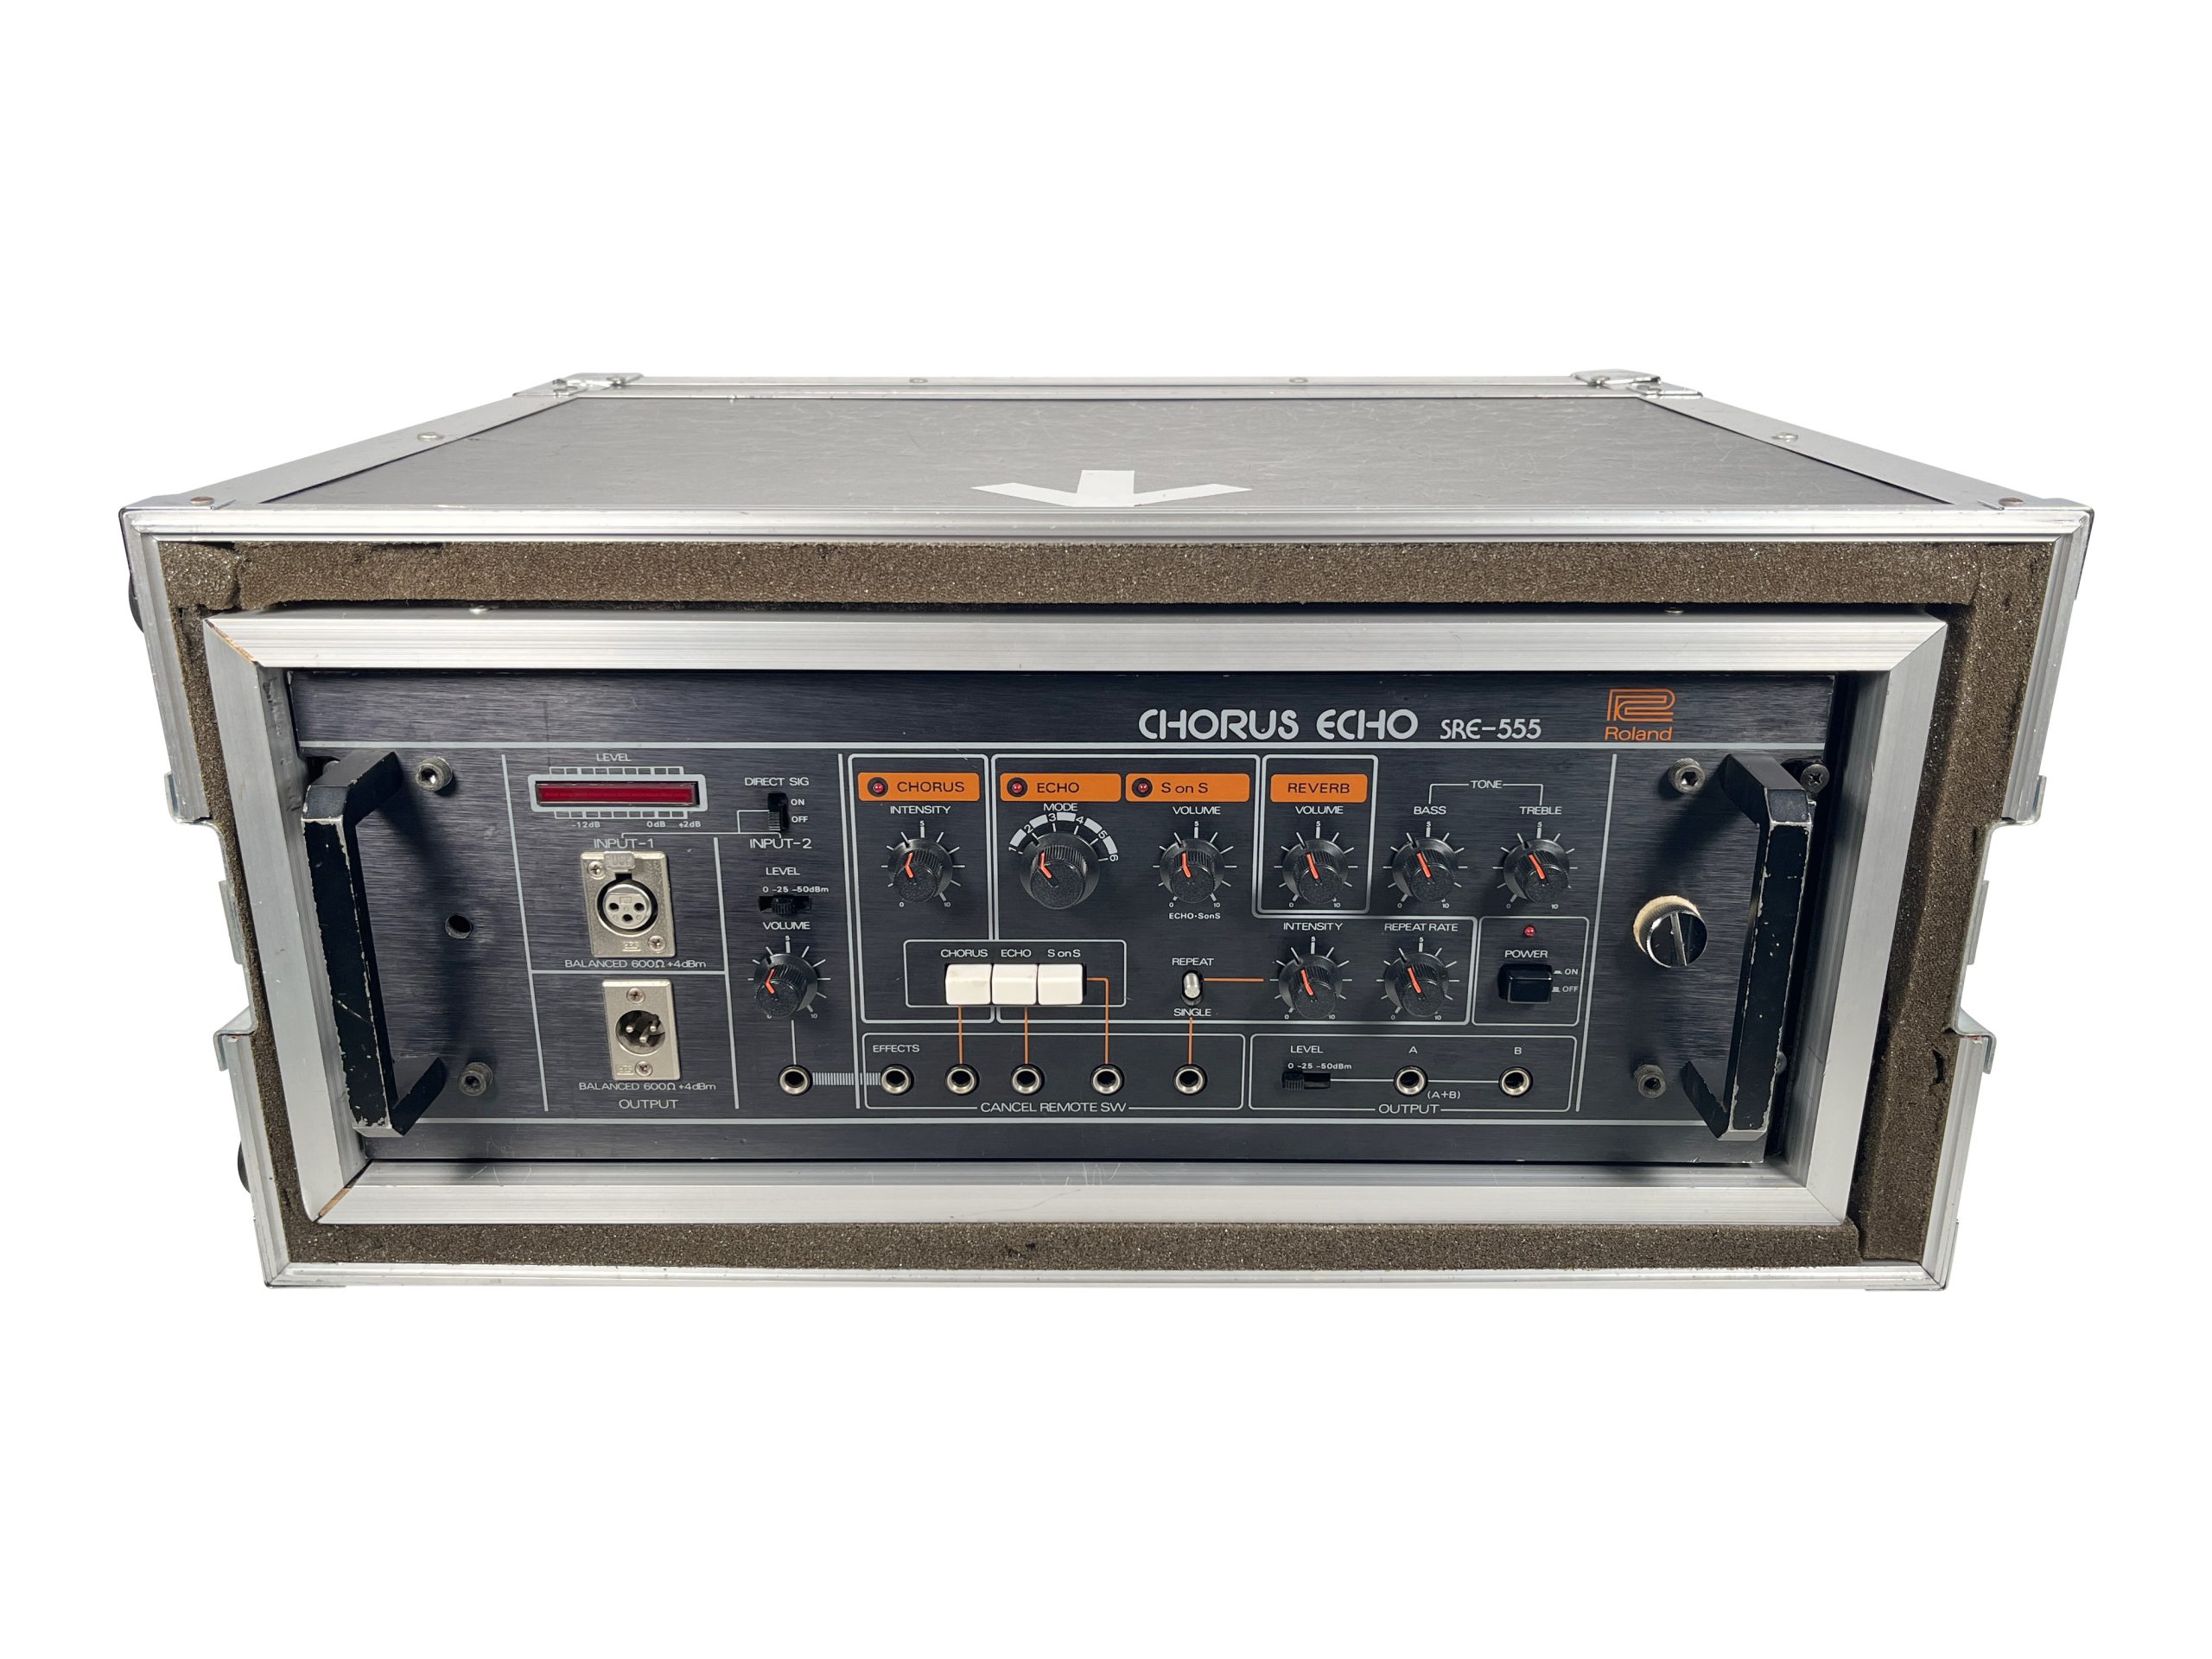 Roland SRE-555 Chorus Echo FOR SALE Serviced, Warranty - Soundgas